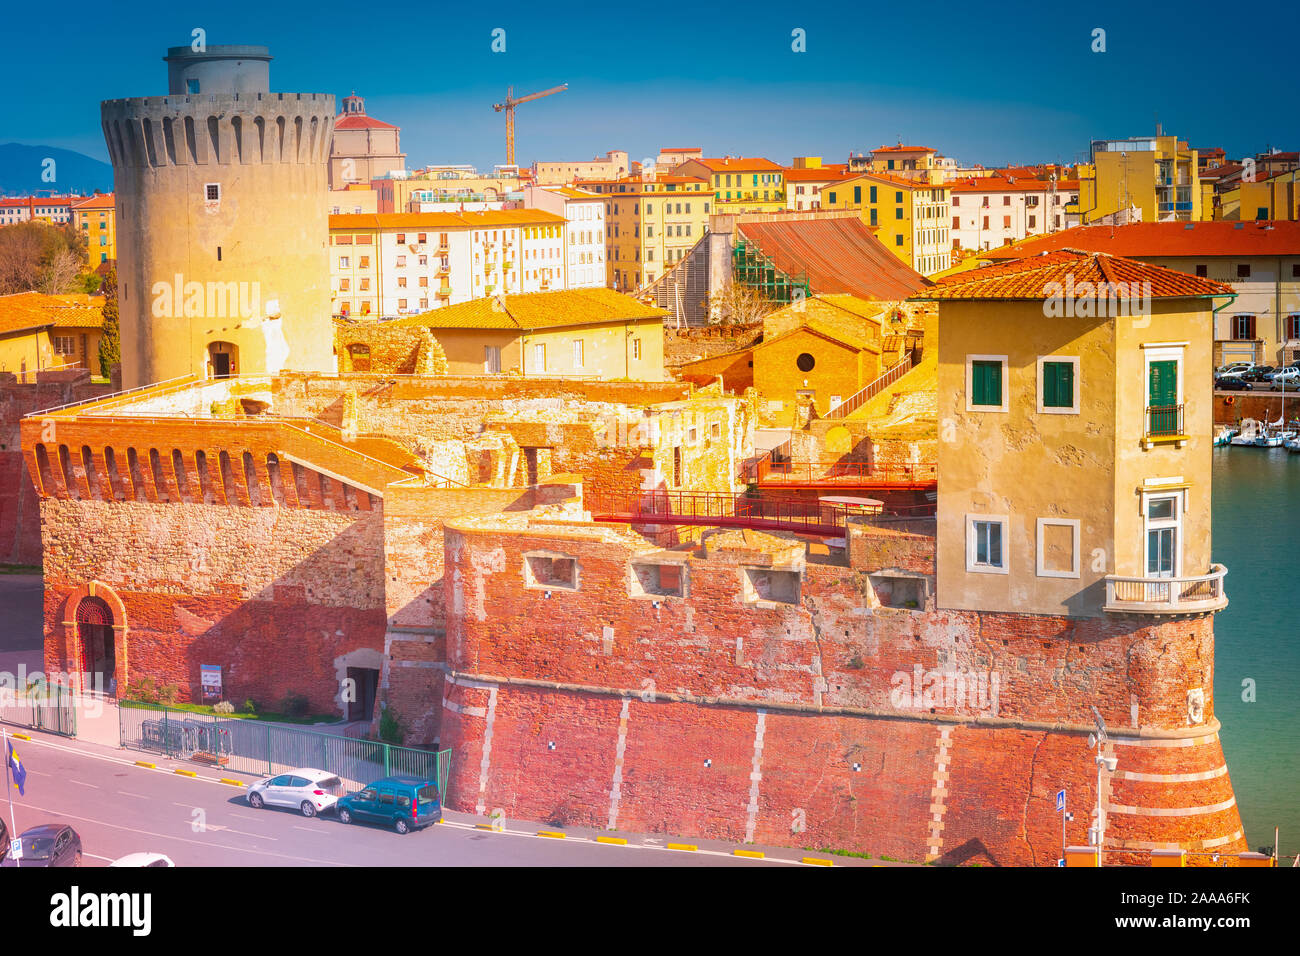 Il fortilizio medievale a Livorno, Italia. Grande vecchia architettura. Una delle principali attrazioni per i turisti in città. Foto Stock